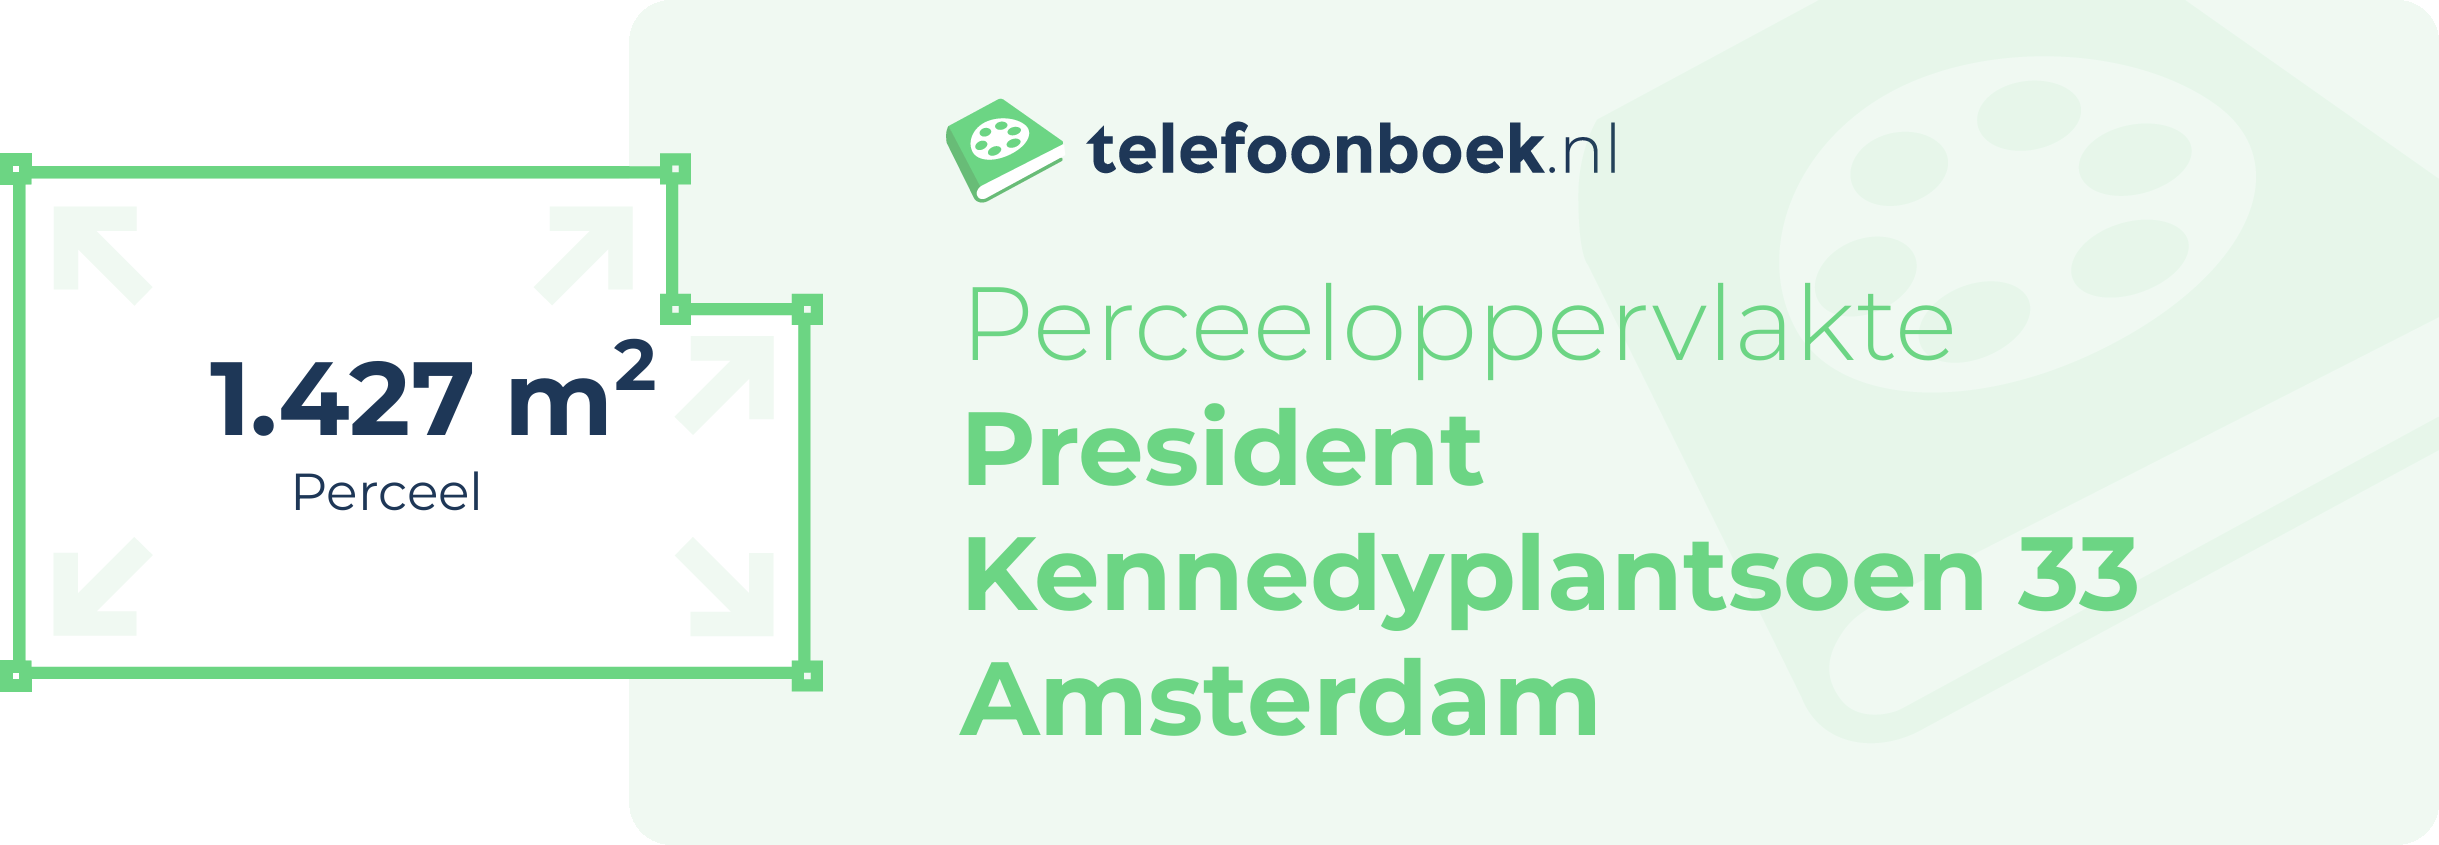 Perceeloppervlakte President Kennedyplantsoen 33 Amsterdam